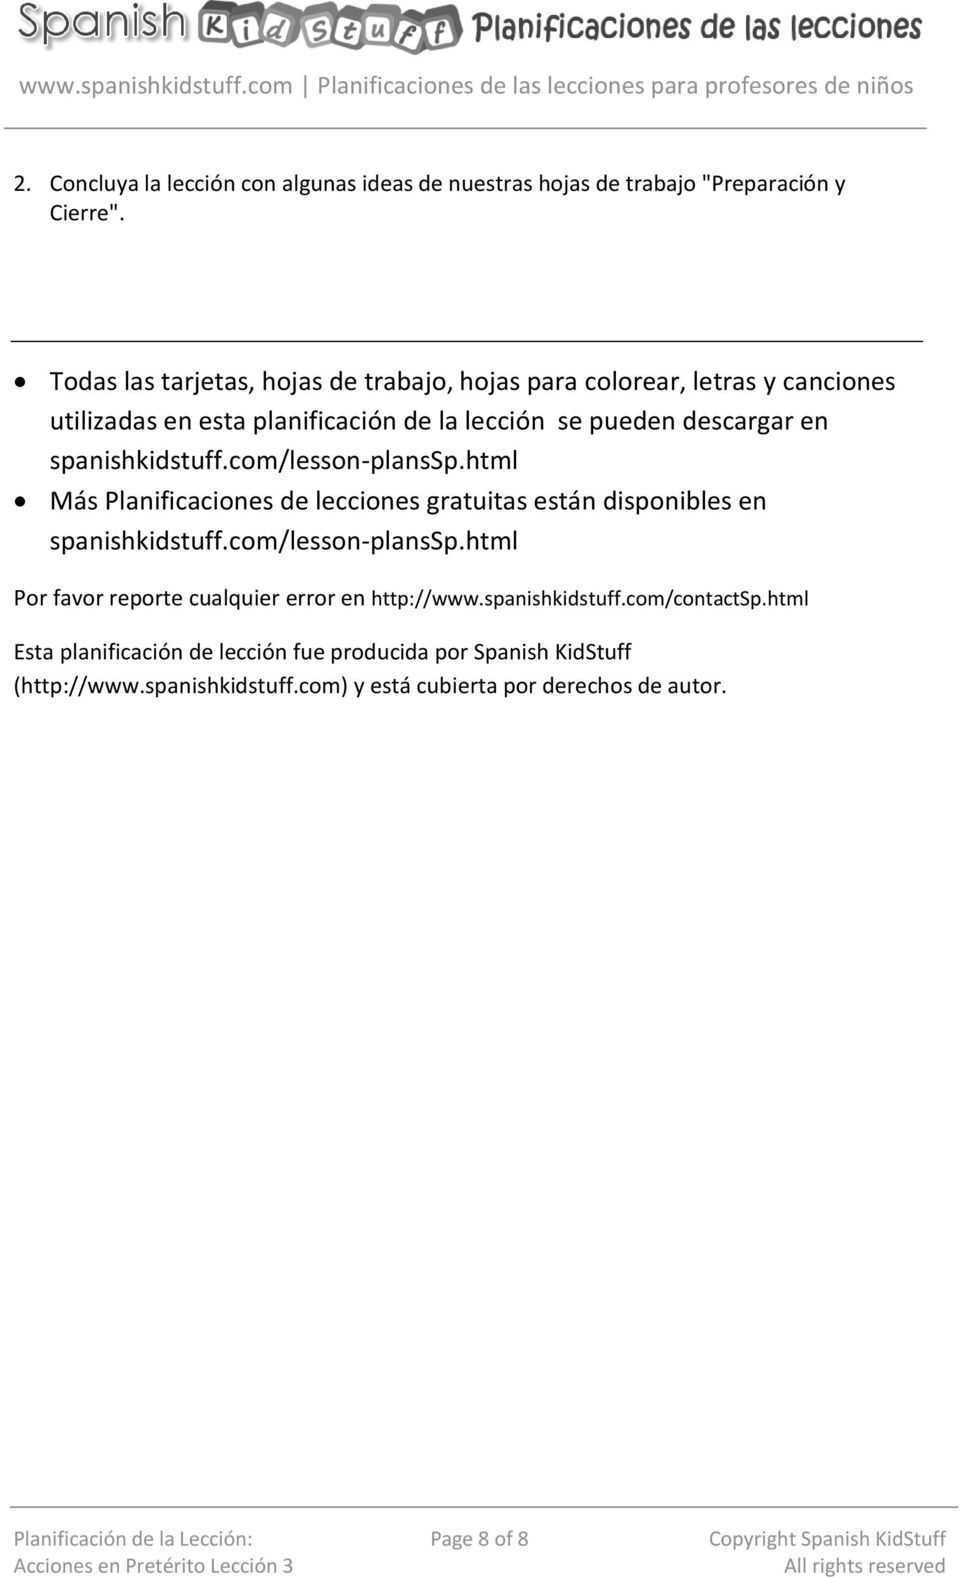 spanishkidstuff.com/lesson-planssp.html Más Planificaciones de lecciones gratuitas están disponibles en spanishkidstuff.com/lesson-planssp.html Por favor reporte cualquier error en http://www.